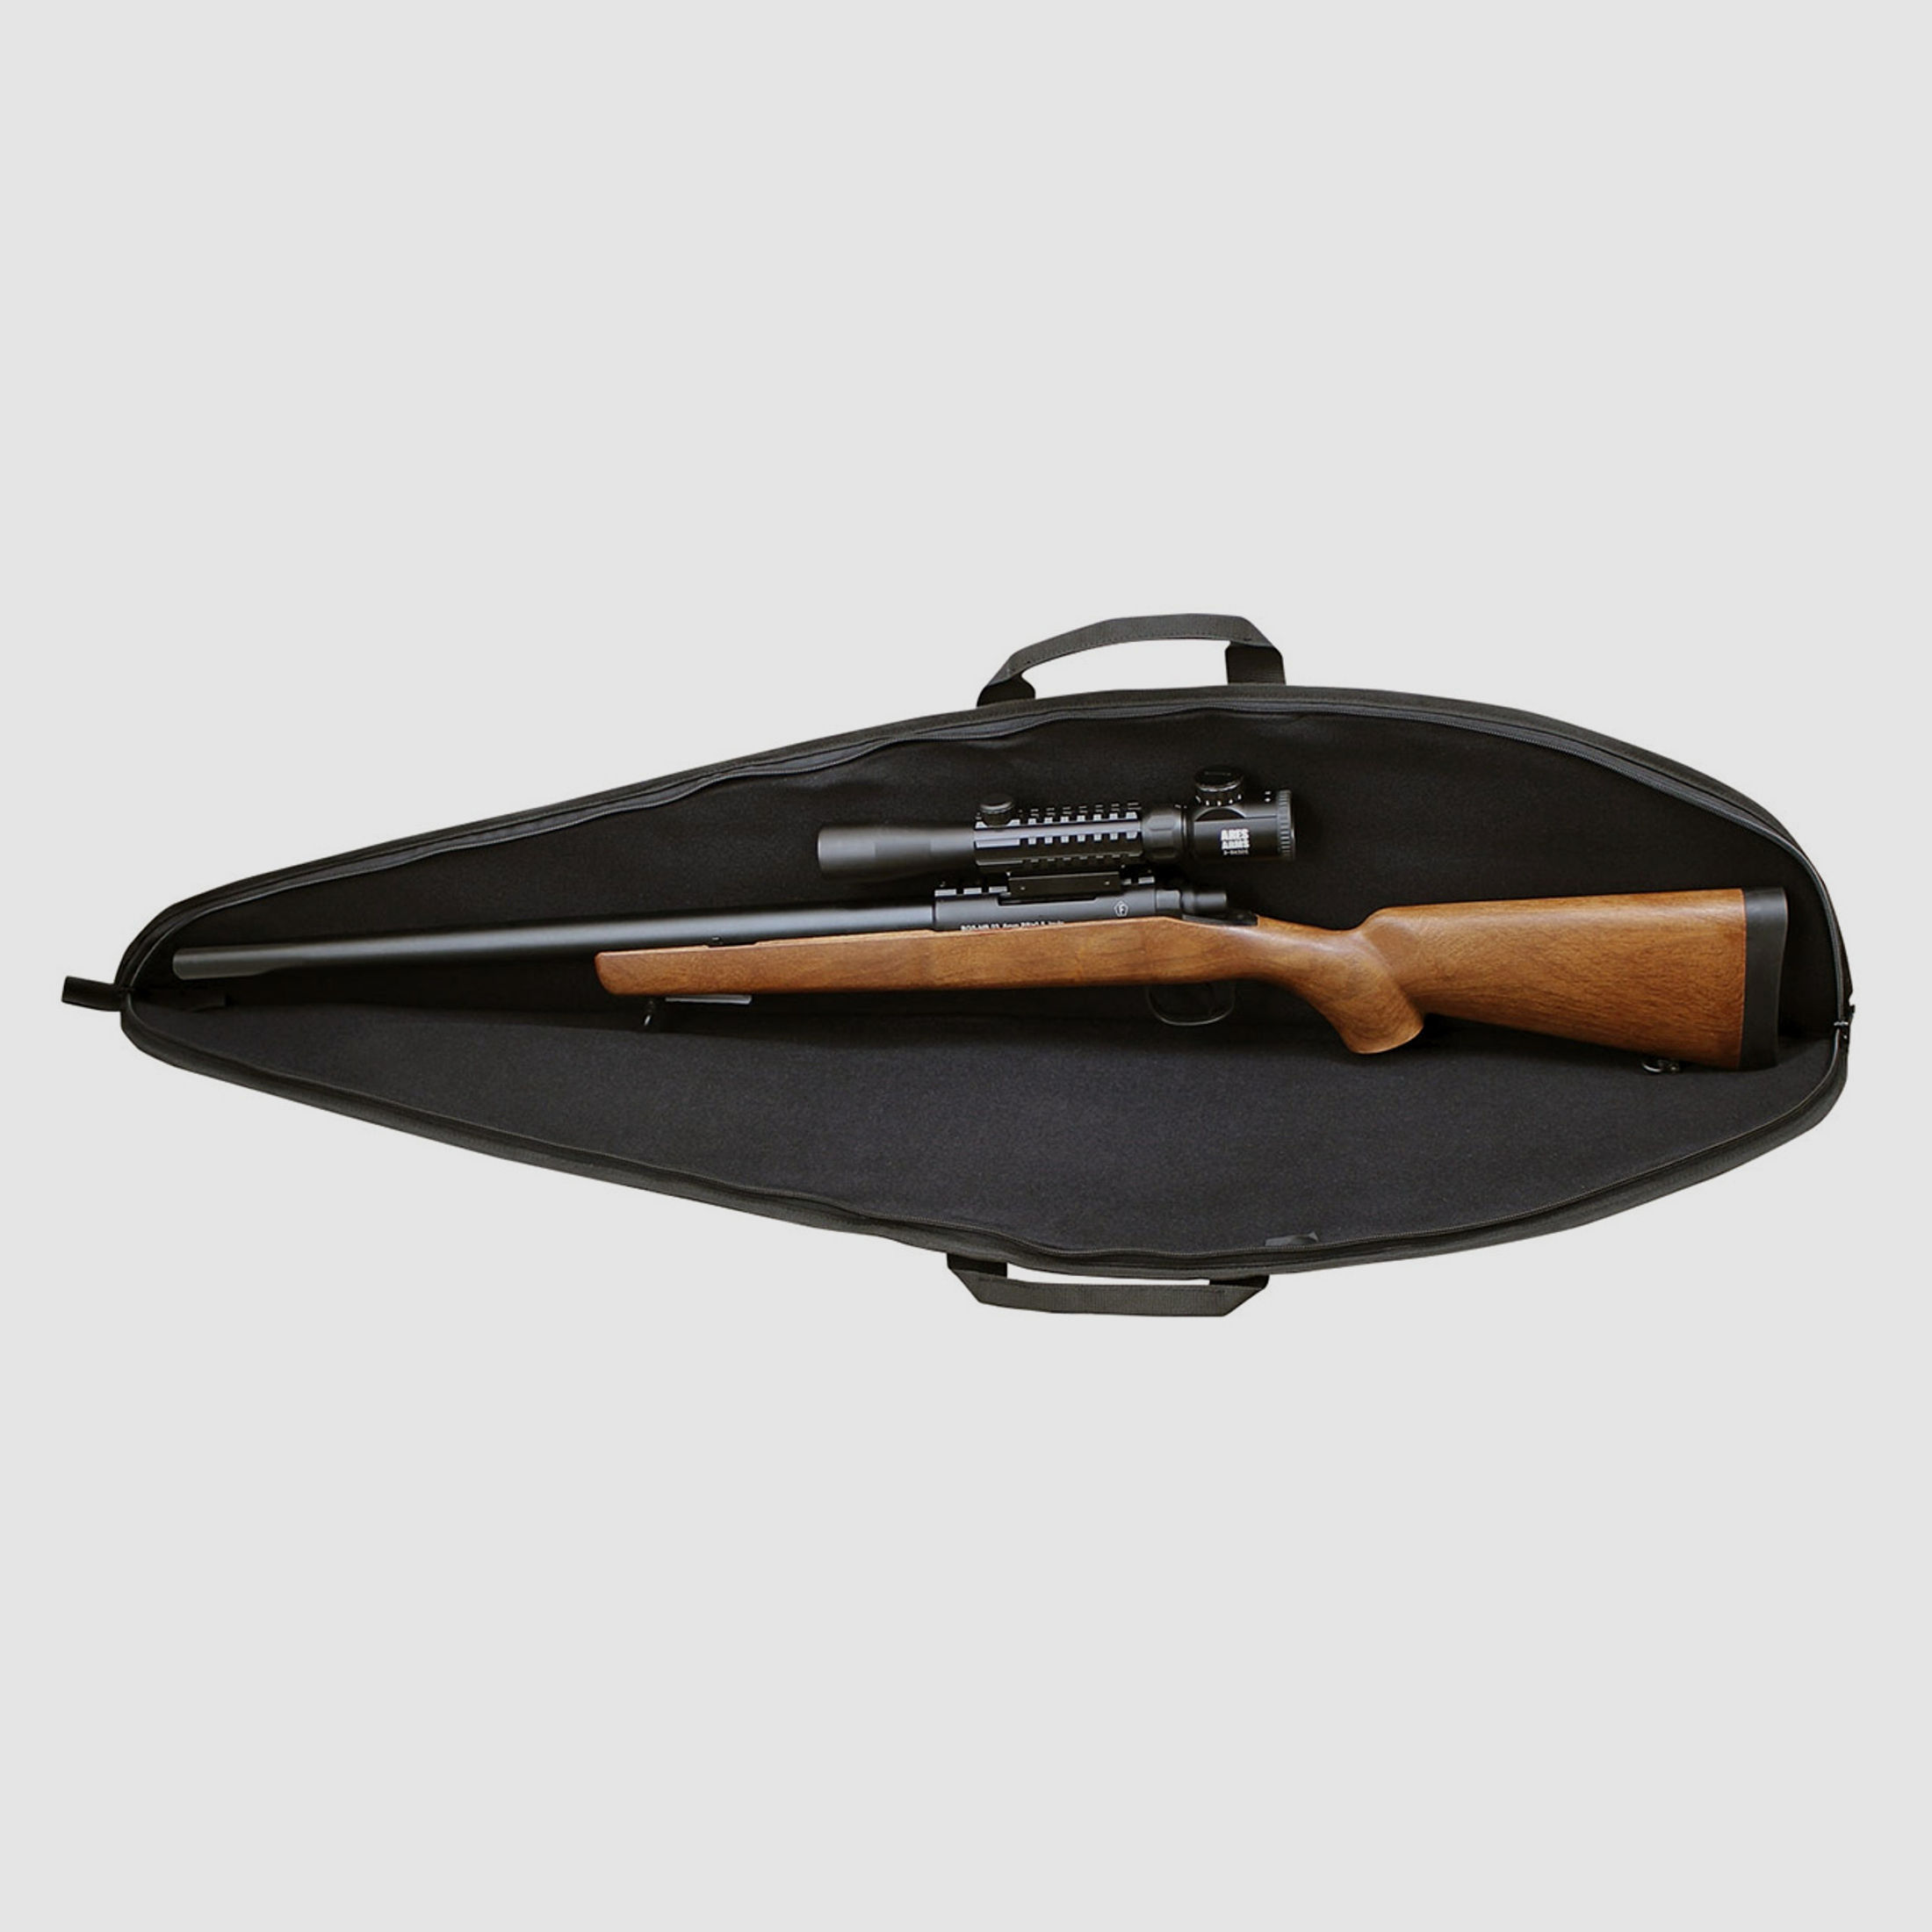 Coptex Gewehrfutteral, schwarz, 106 x 22 cm, Nylon, mit Trageriemen und Seitentasche